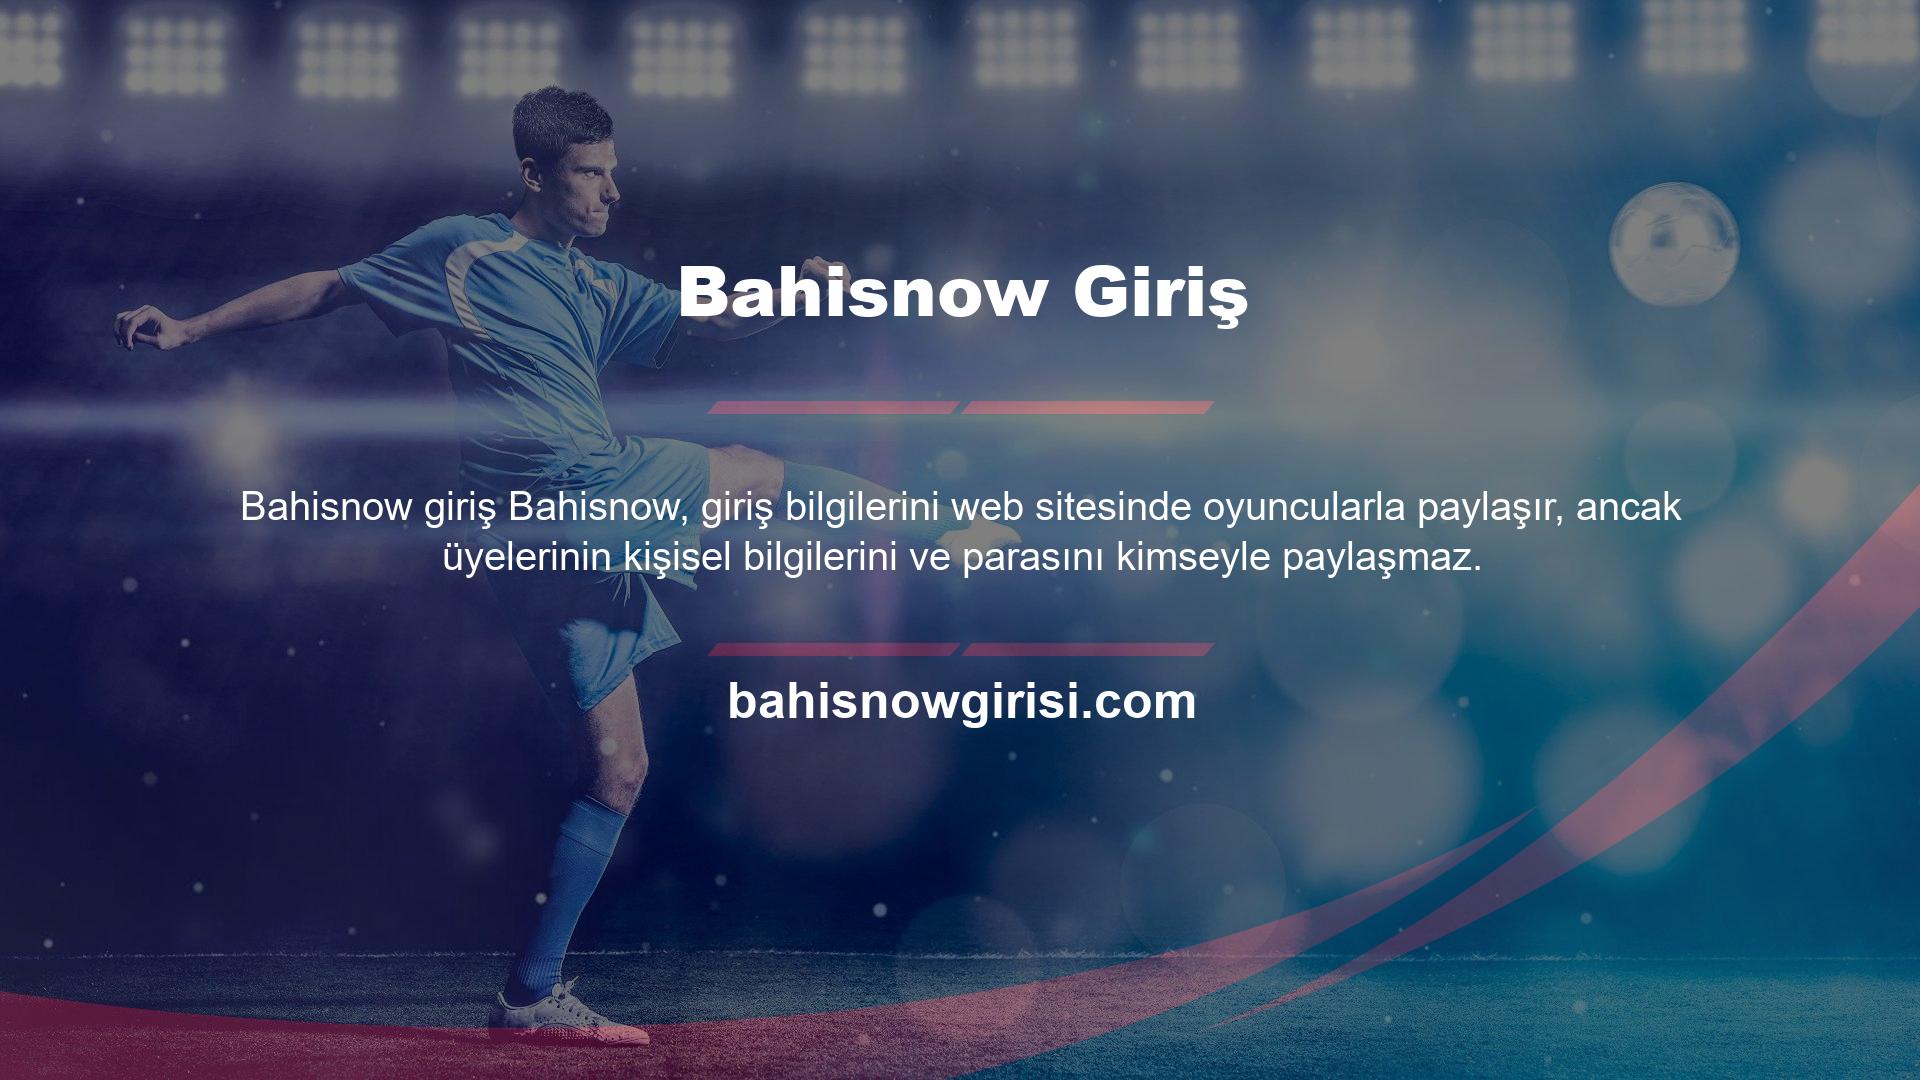 Bahisnow, yeni açtığı sitesinde kullanıcılara daha güvenilir ve seçici bir ortam sunarak canlı destek hattı üzerinden soru ve isteklerine yanıt veriyor